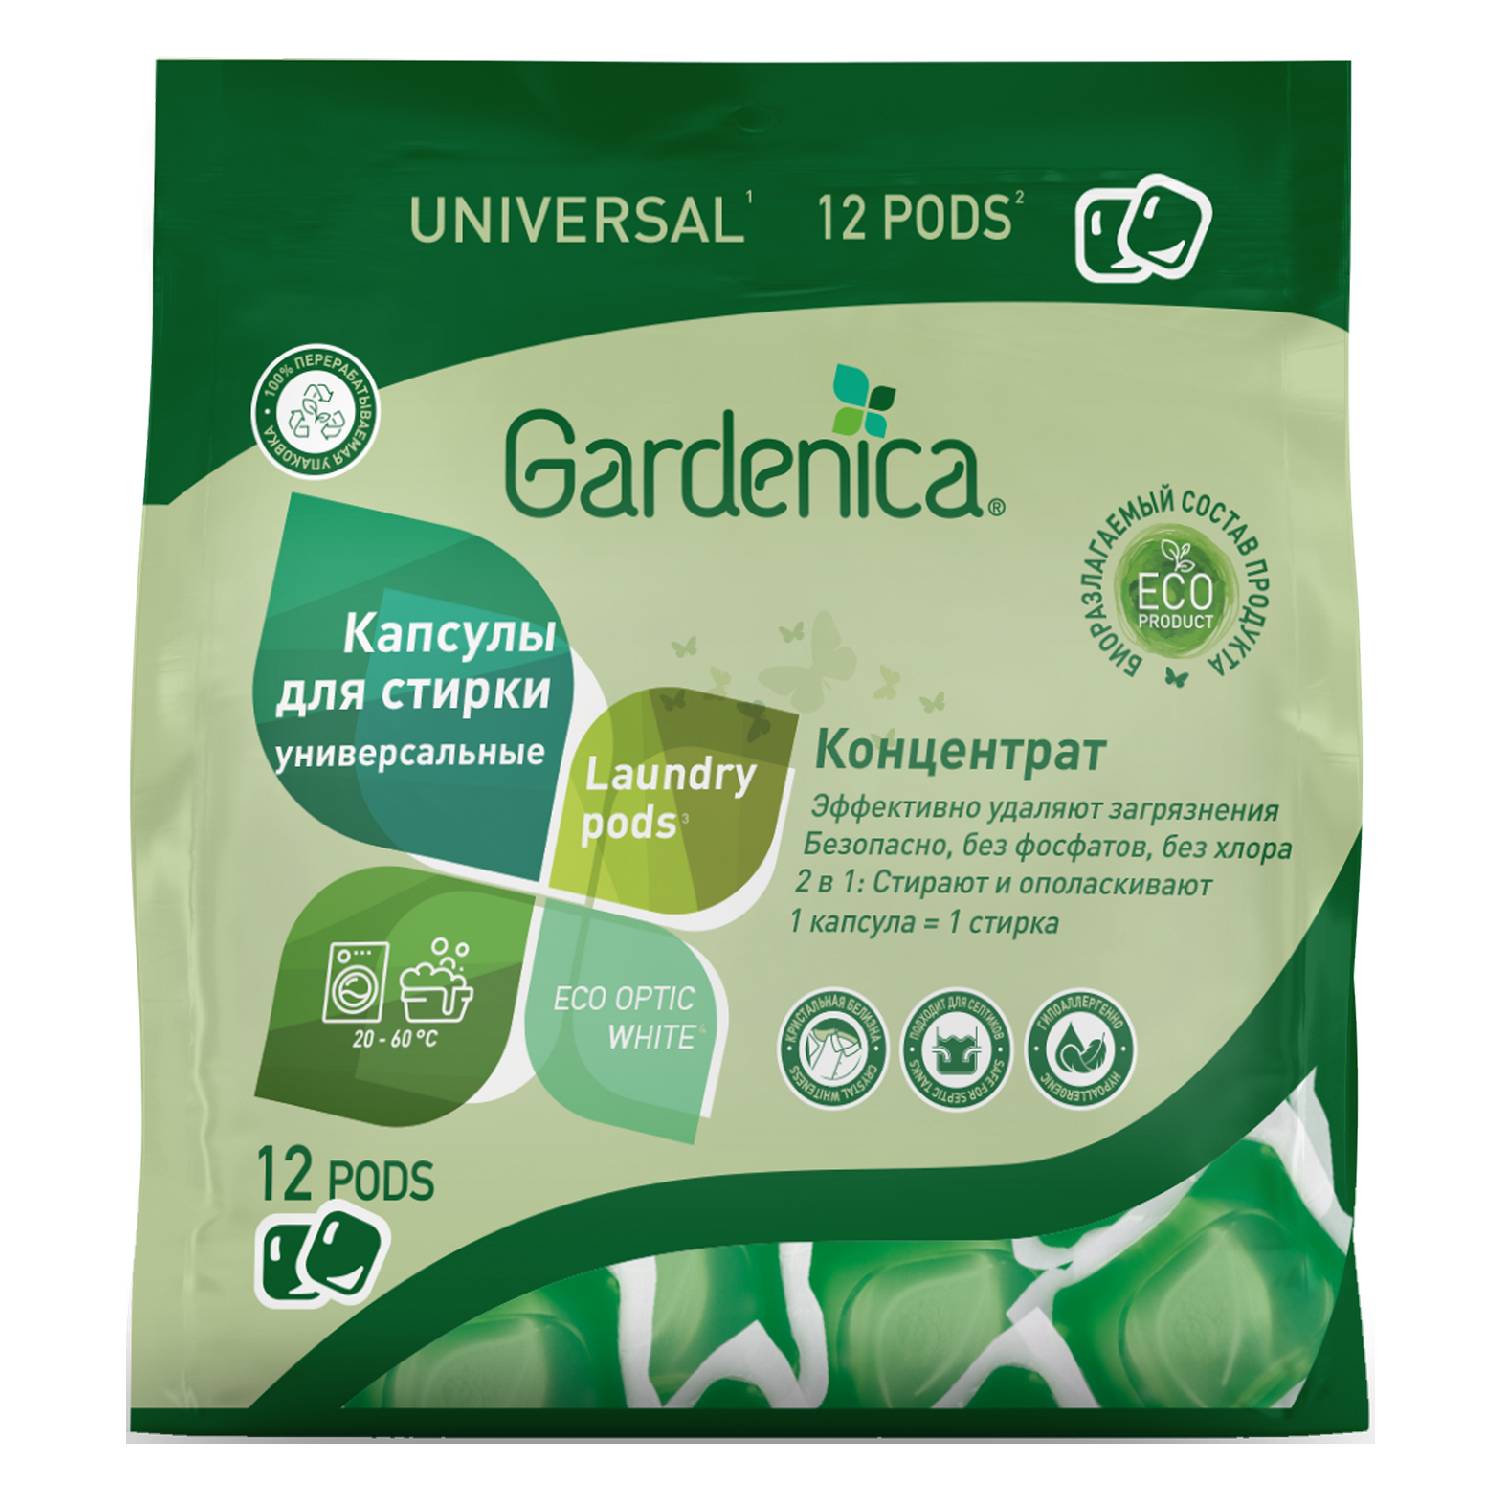 Gardenica Универсальные экологичные капсулы для стирки цветного и белого белья, 12 шт (Gardenica, Стирка)